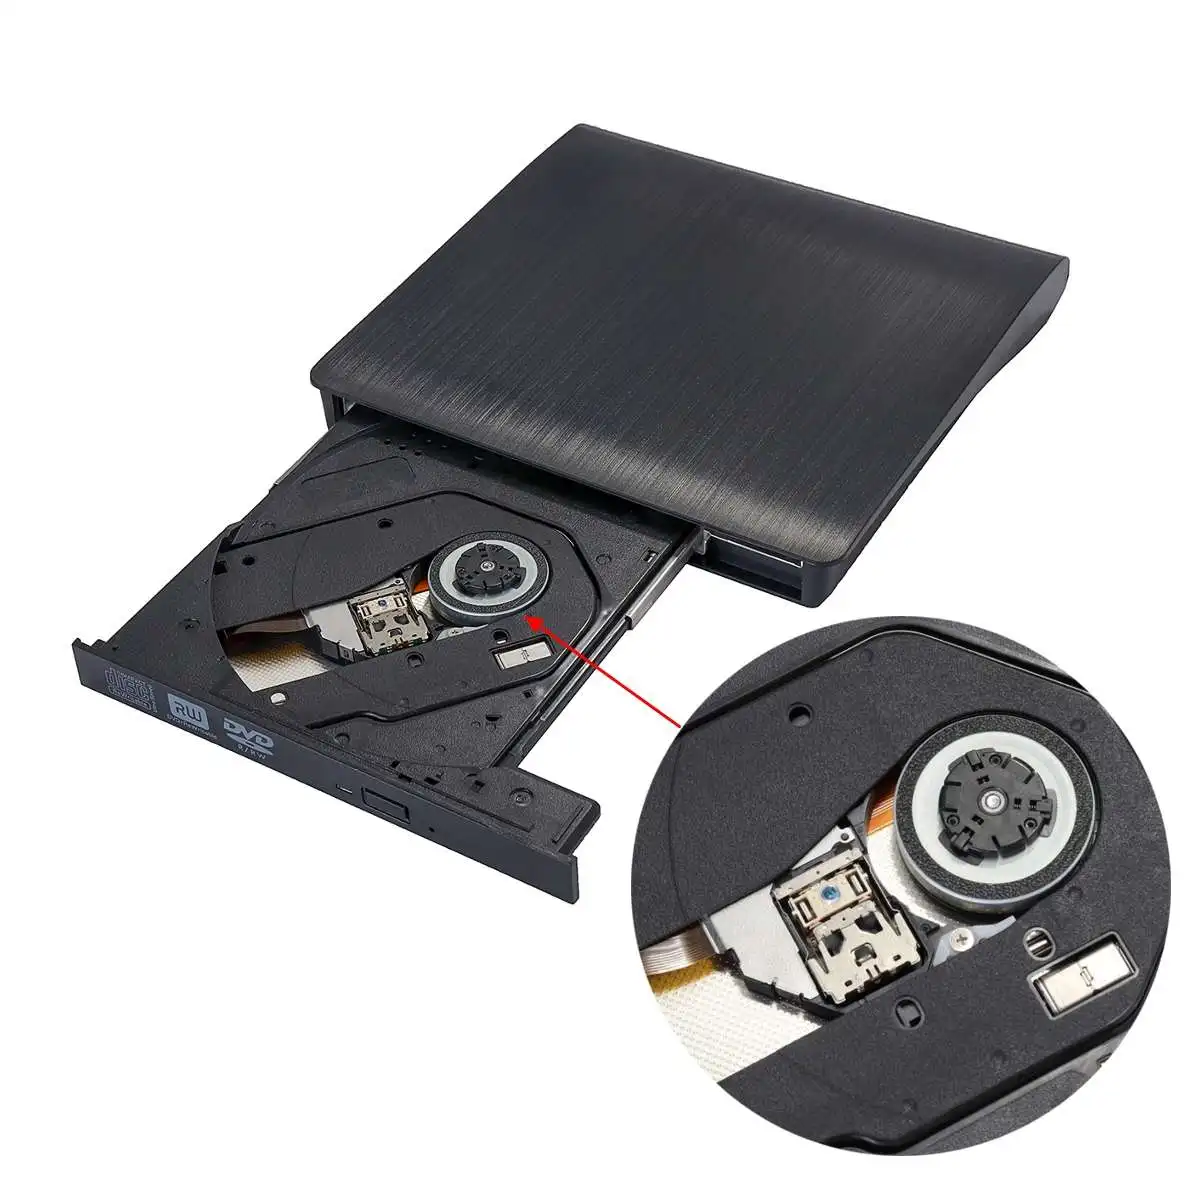 Внешний DVD привод USB 3,0 Мобильный DVD-RW CD-RW комбо привод горелки ридер плеер рекордер портативный для ноутбука